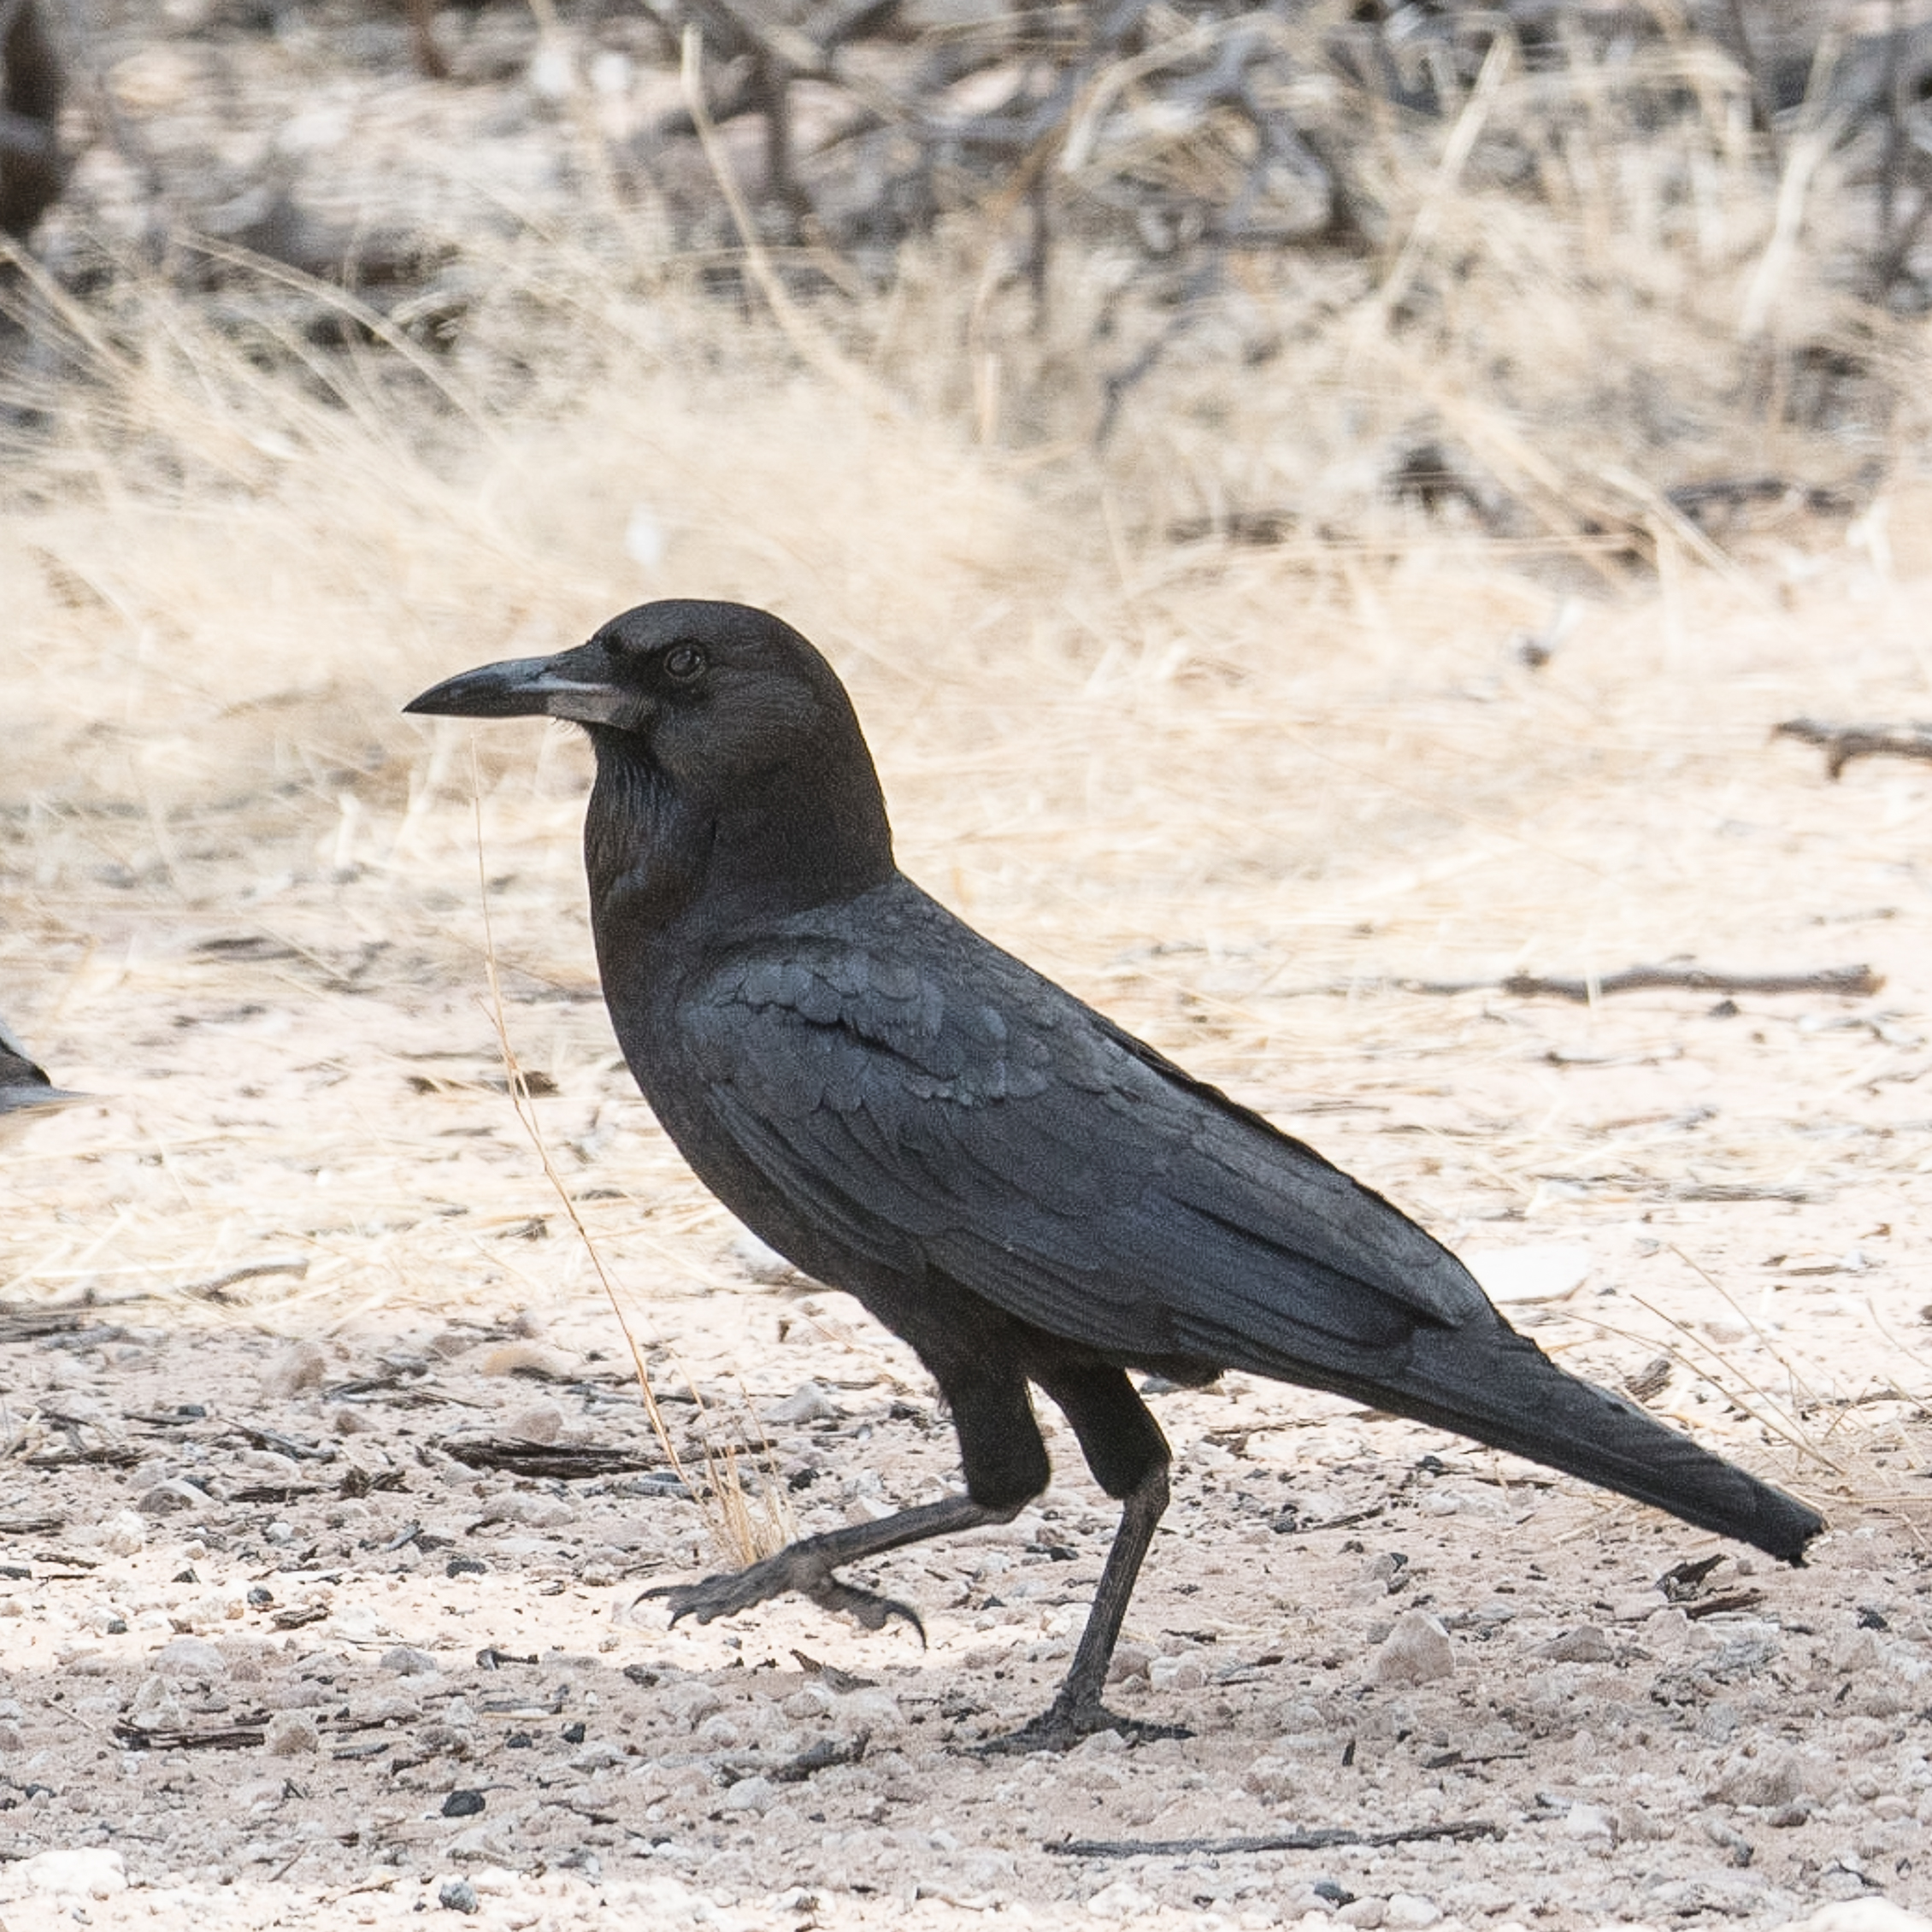 Corneille du Cap adulte (Cape crow, Corvus capensis), Parc National de la Côte des squelettes, Namibie.